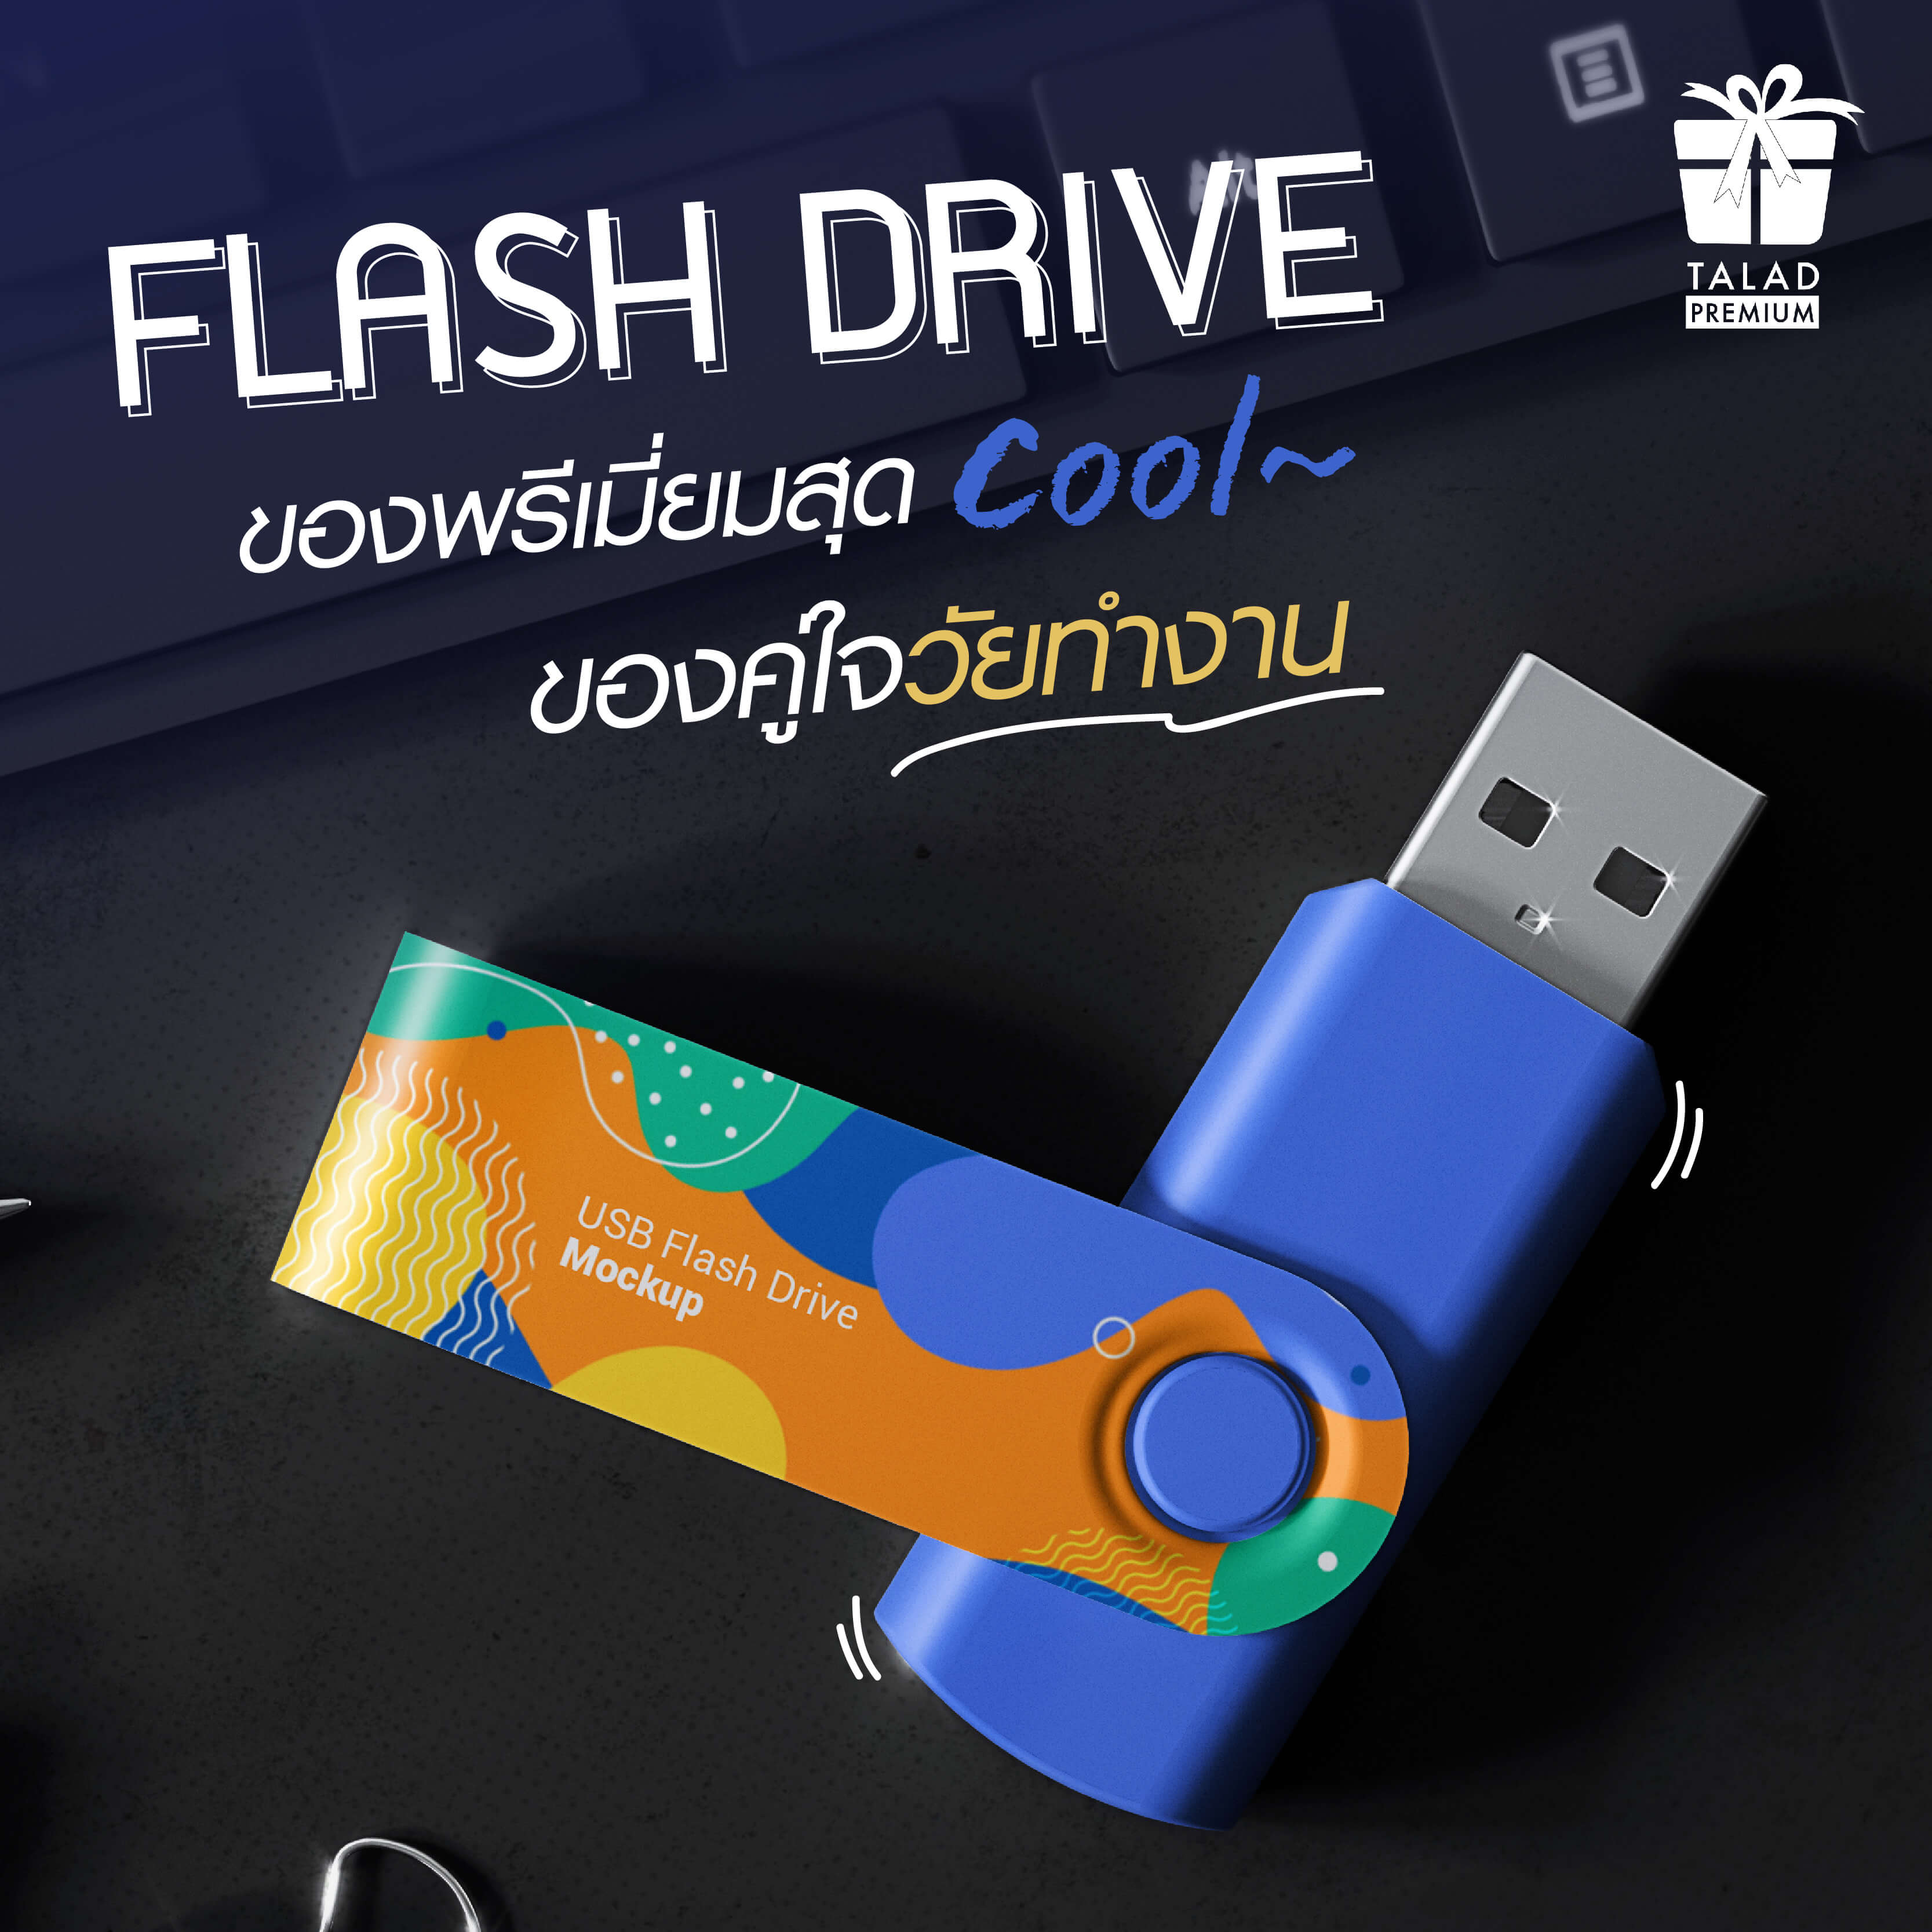 Flash drive - ของพรีเมี่ยมสุด Cool คนรับโดนใจ ตอบโจทย์วัยทำงาน